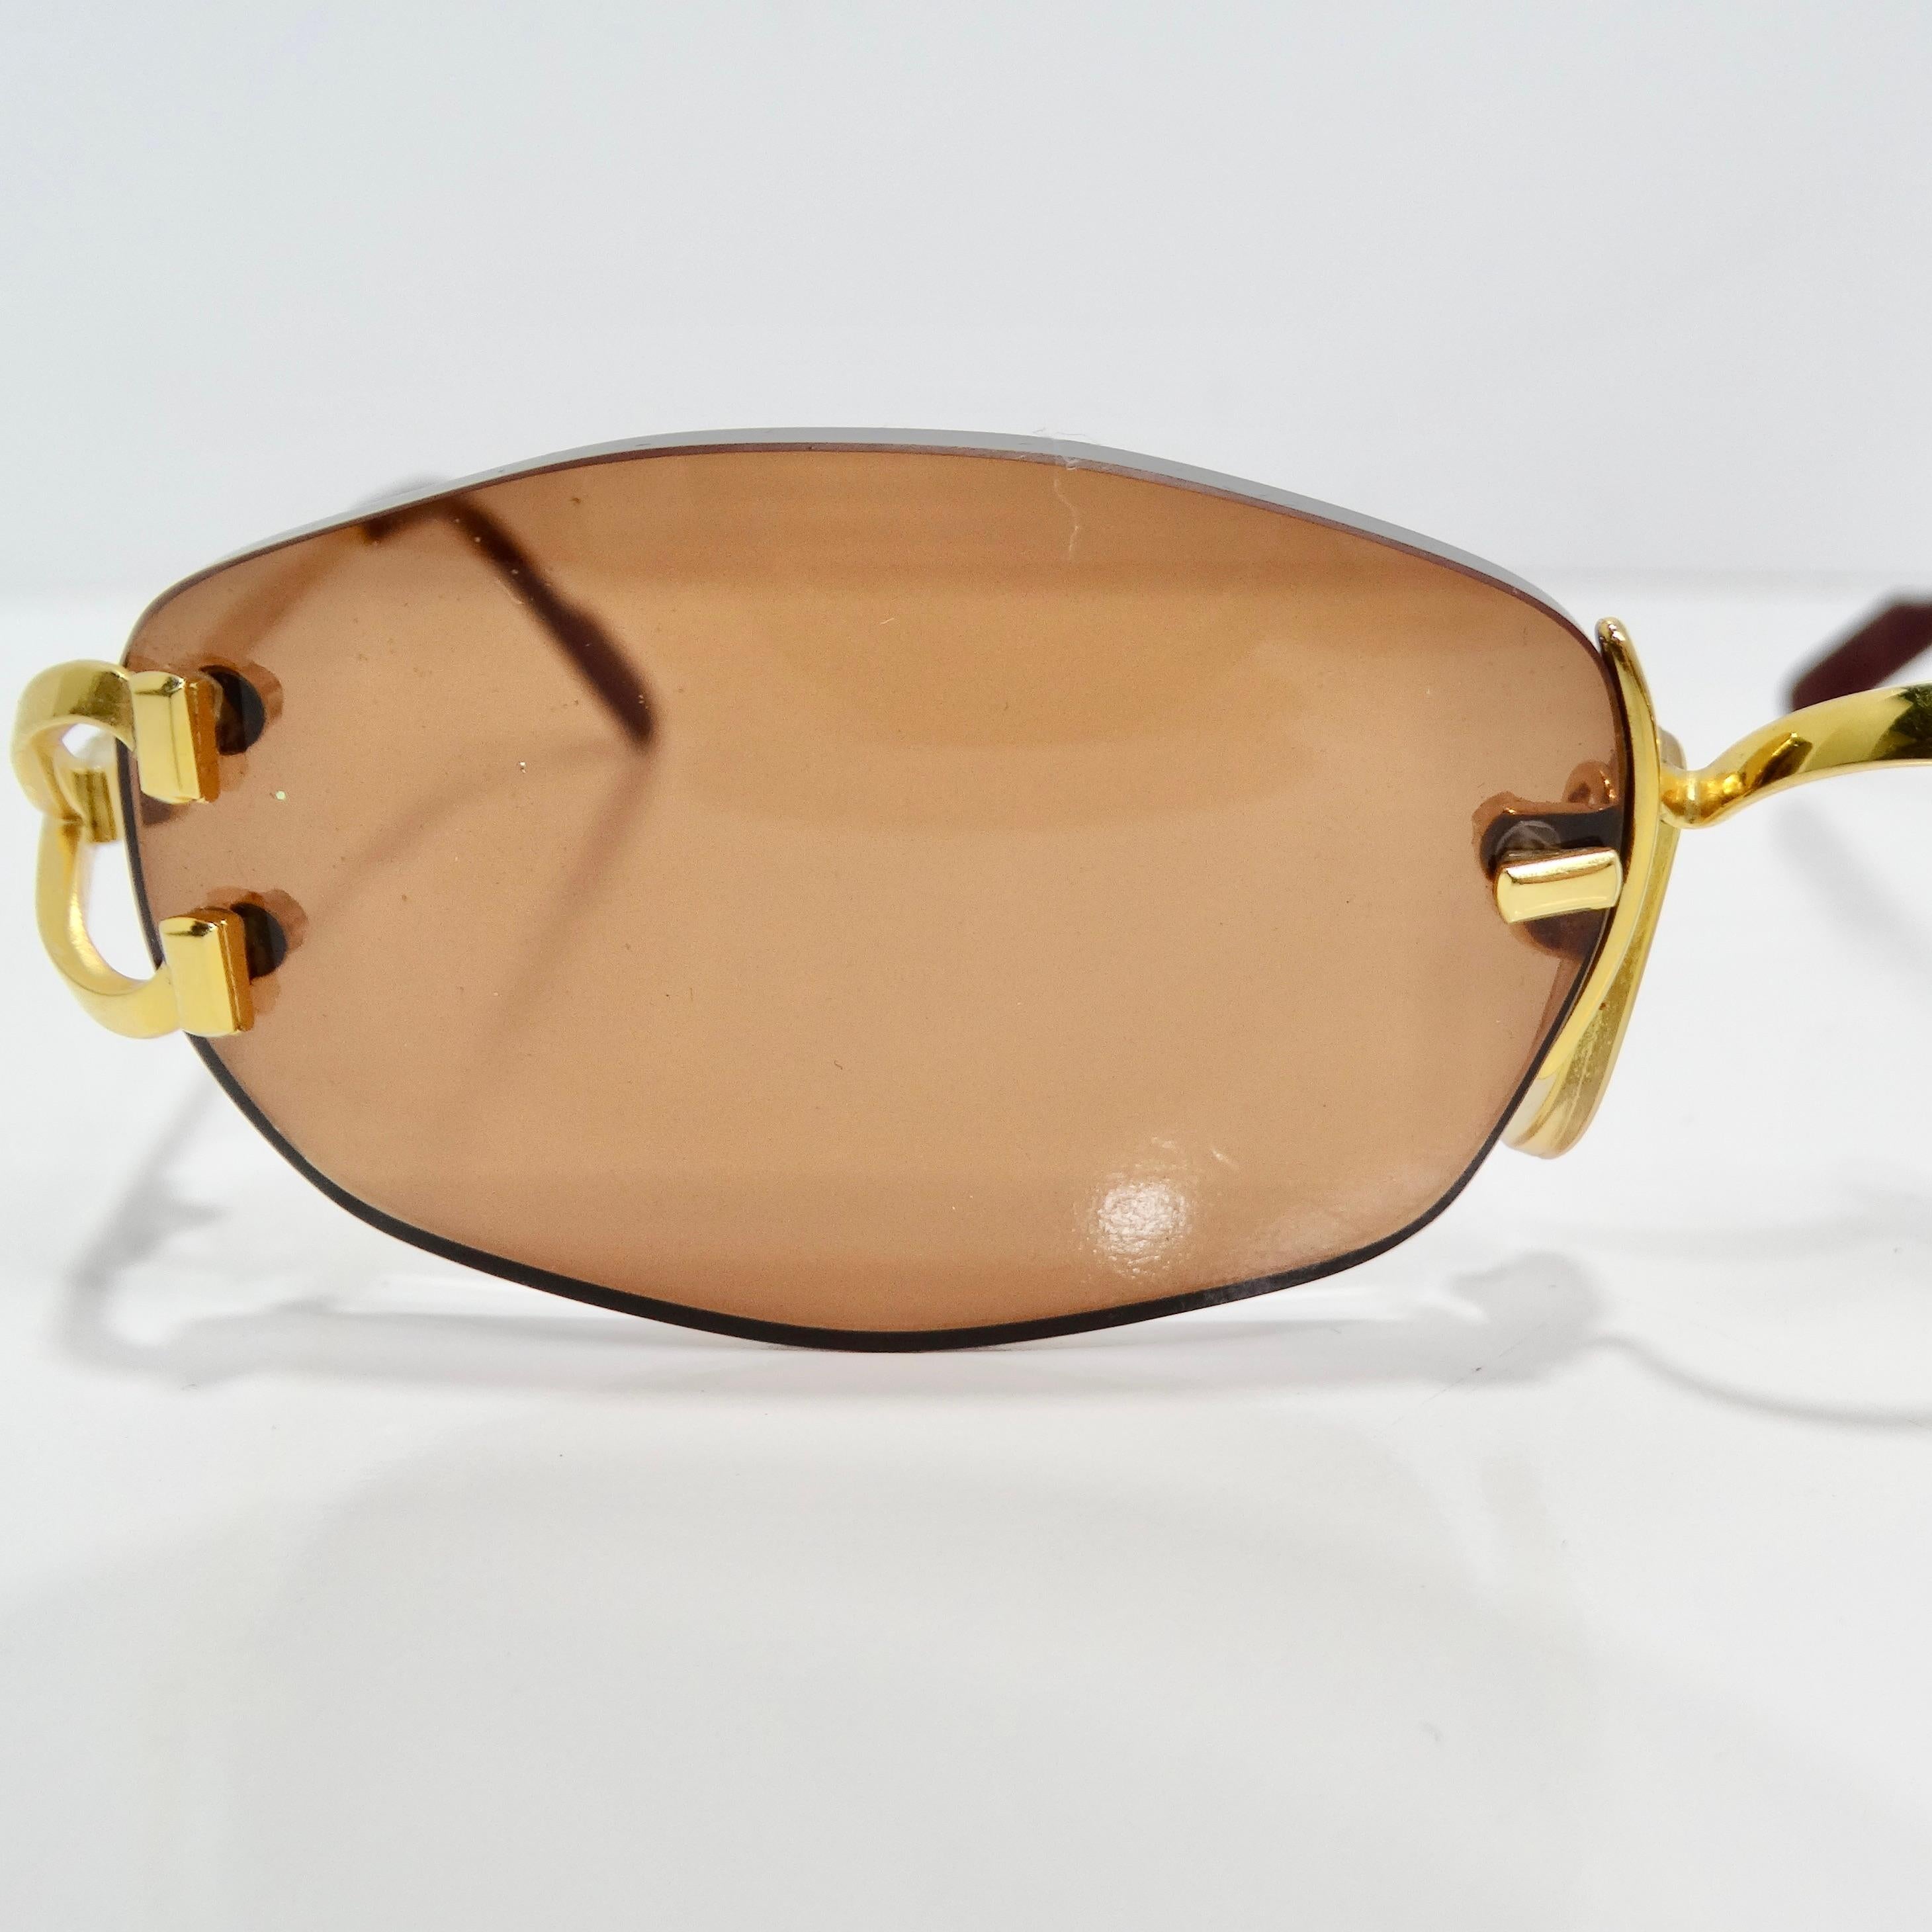 Die Cartier 1990s Gold Tone Capri Sonnenbrille ist ein luxuriöses und zeitloses Accessoire, das Eleganz und Raffinesse ausstrahlt. Diese mit viel Liebe zum Detail gefertigte randlose Sonnenbrille setzt ein markantes Zeichen und bietet gleichzeitig